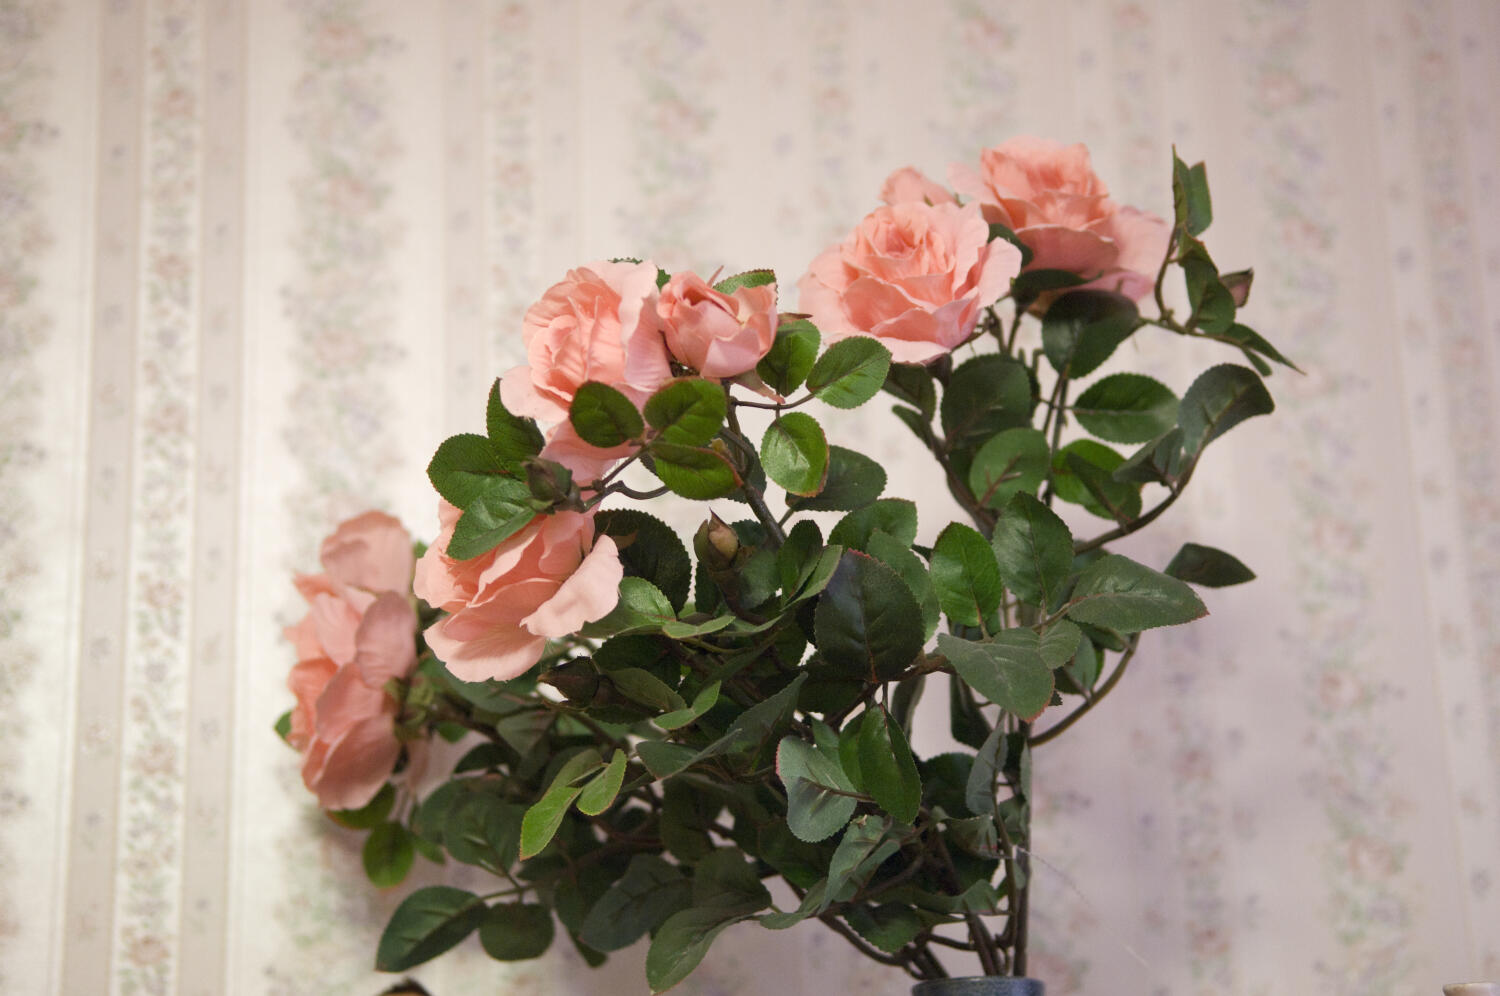 In einer grünlichen Vase ein kleiner Strauß rosaroter Rosen mit grünen, kräftigen Blättern.